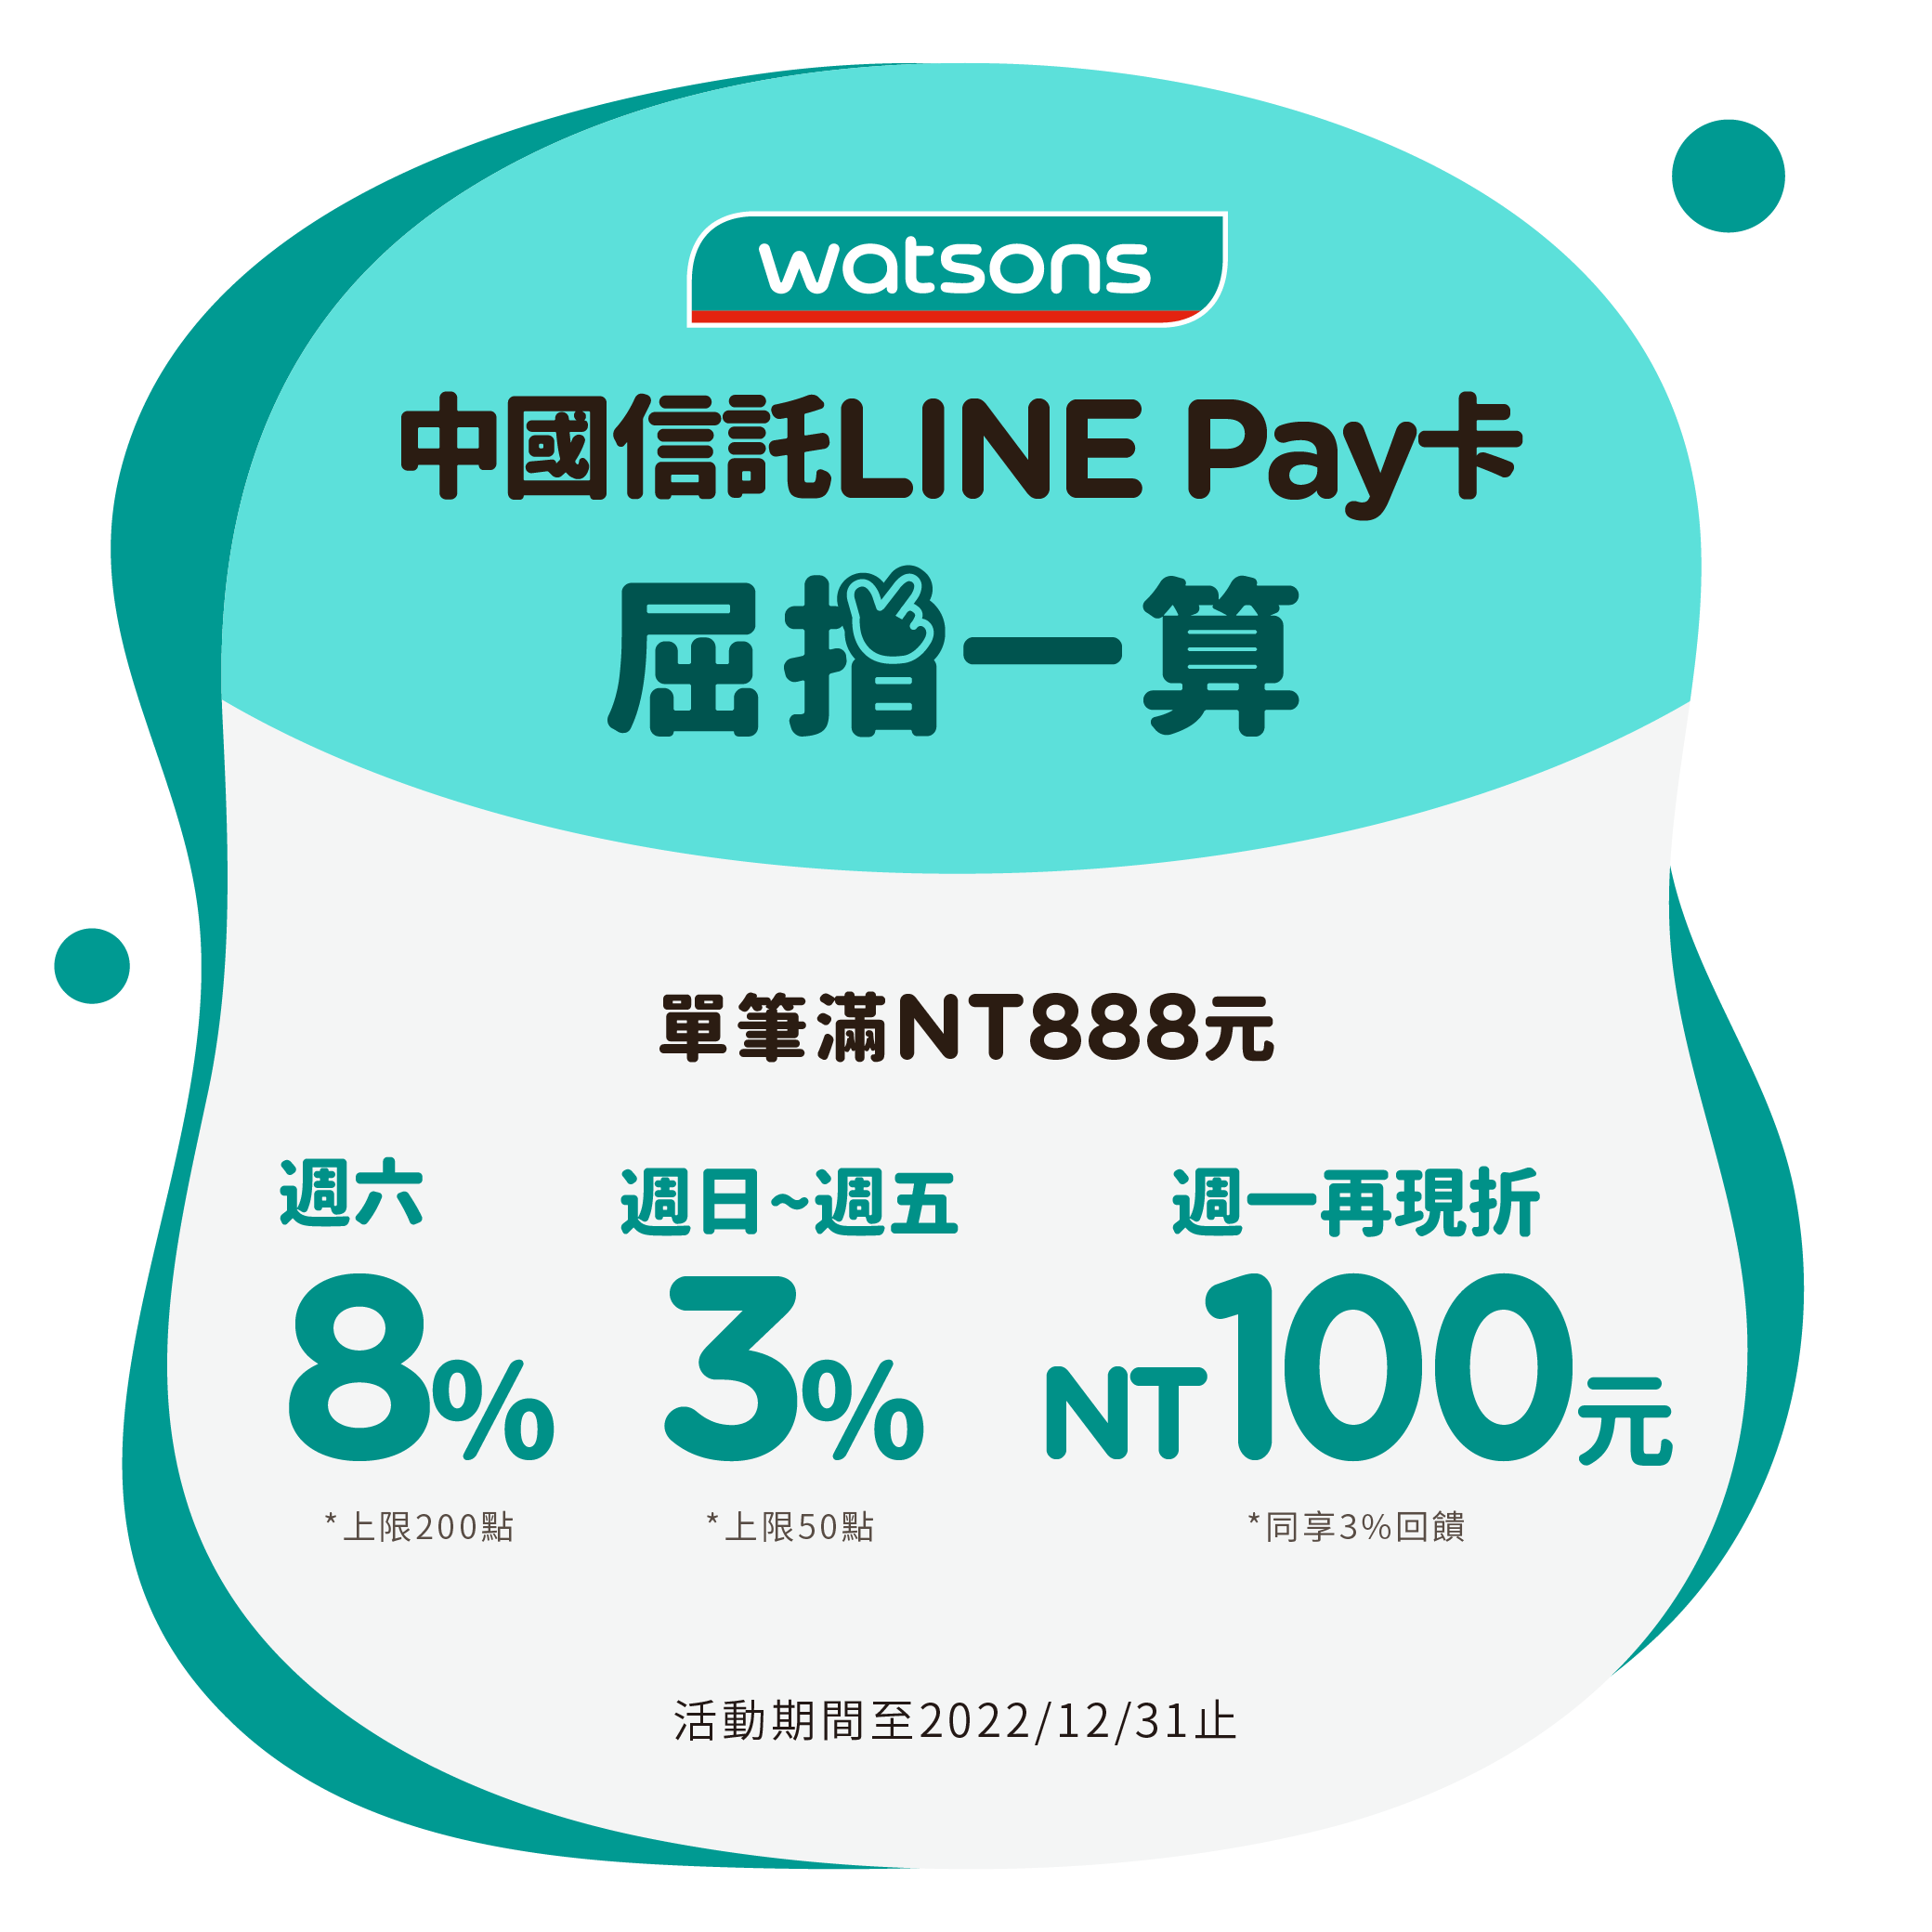 中國信託LINE Pay卡主打特店：屈臣氏